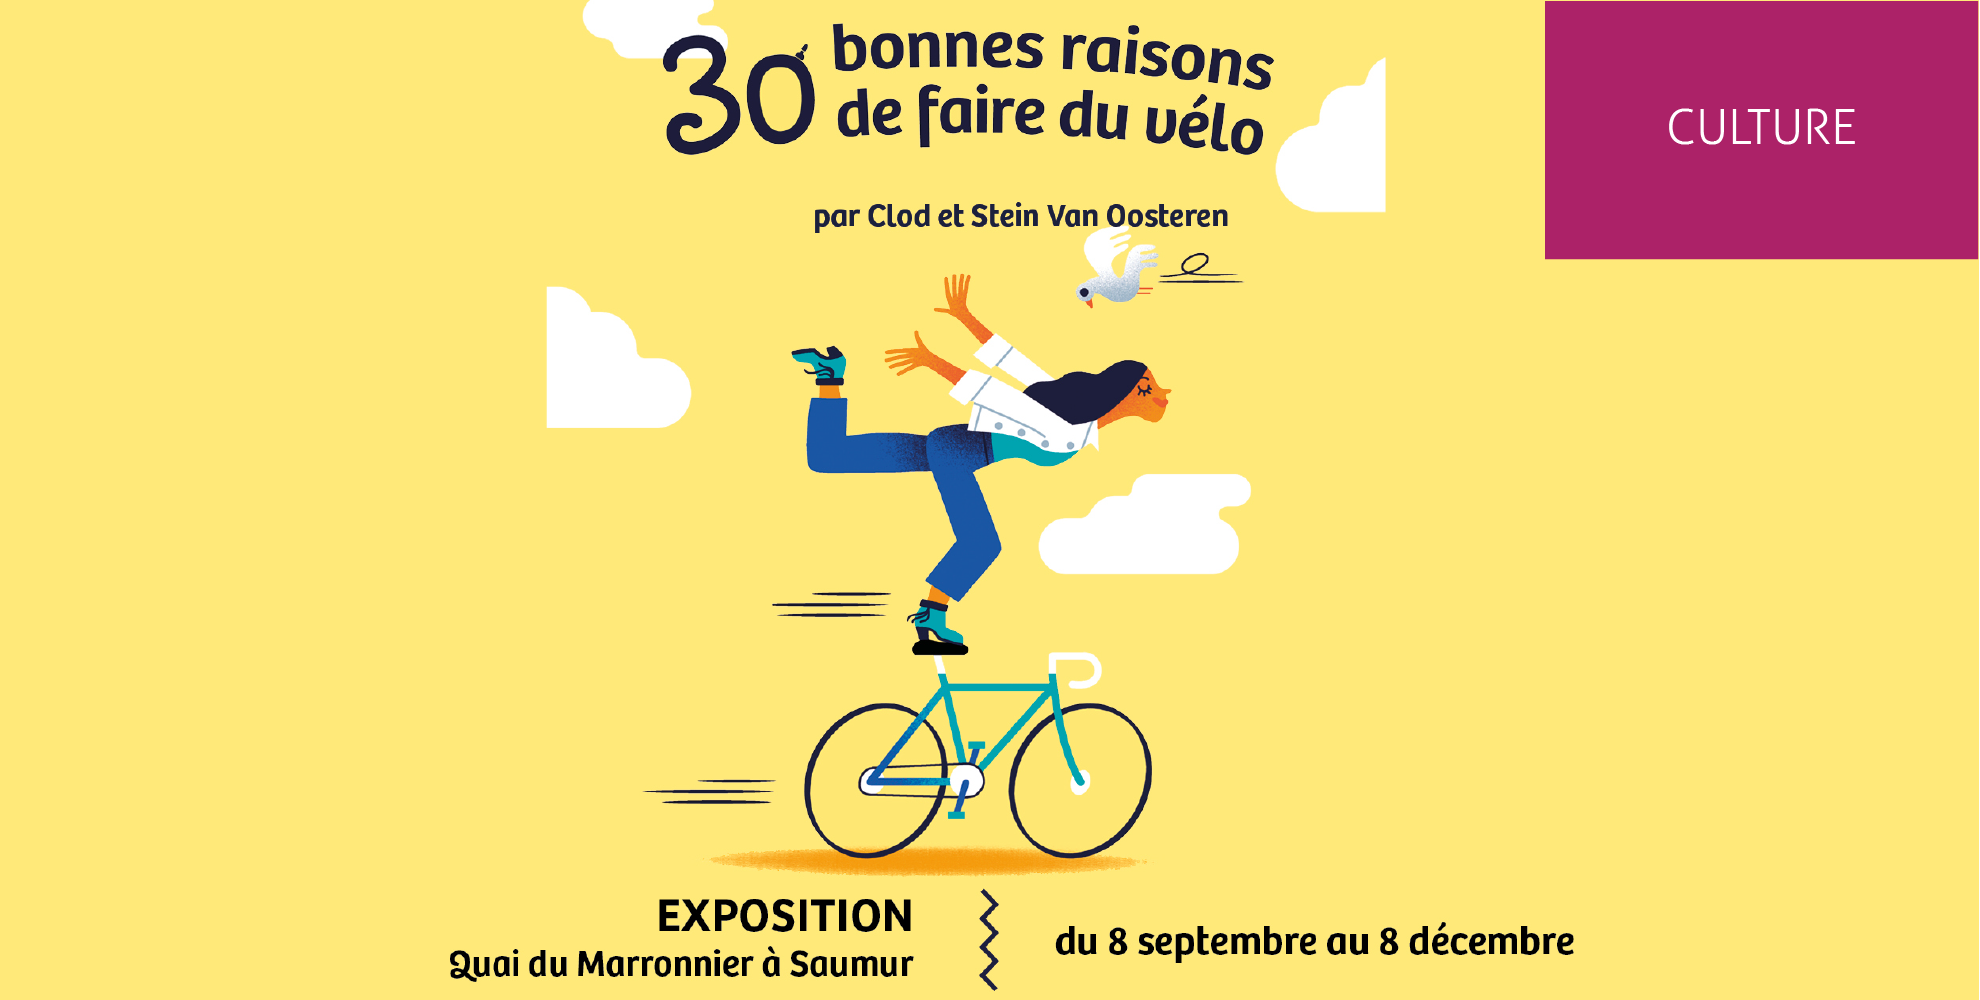 30 bonnes raisons de faire du vélo par Clod et Stein Van Oosteren